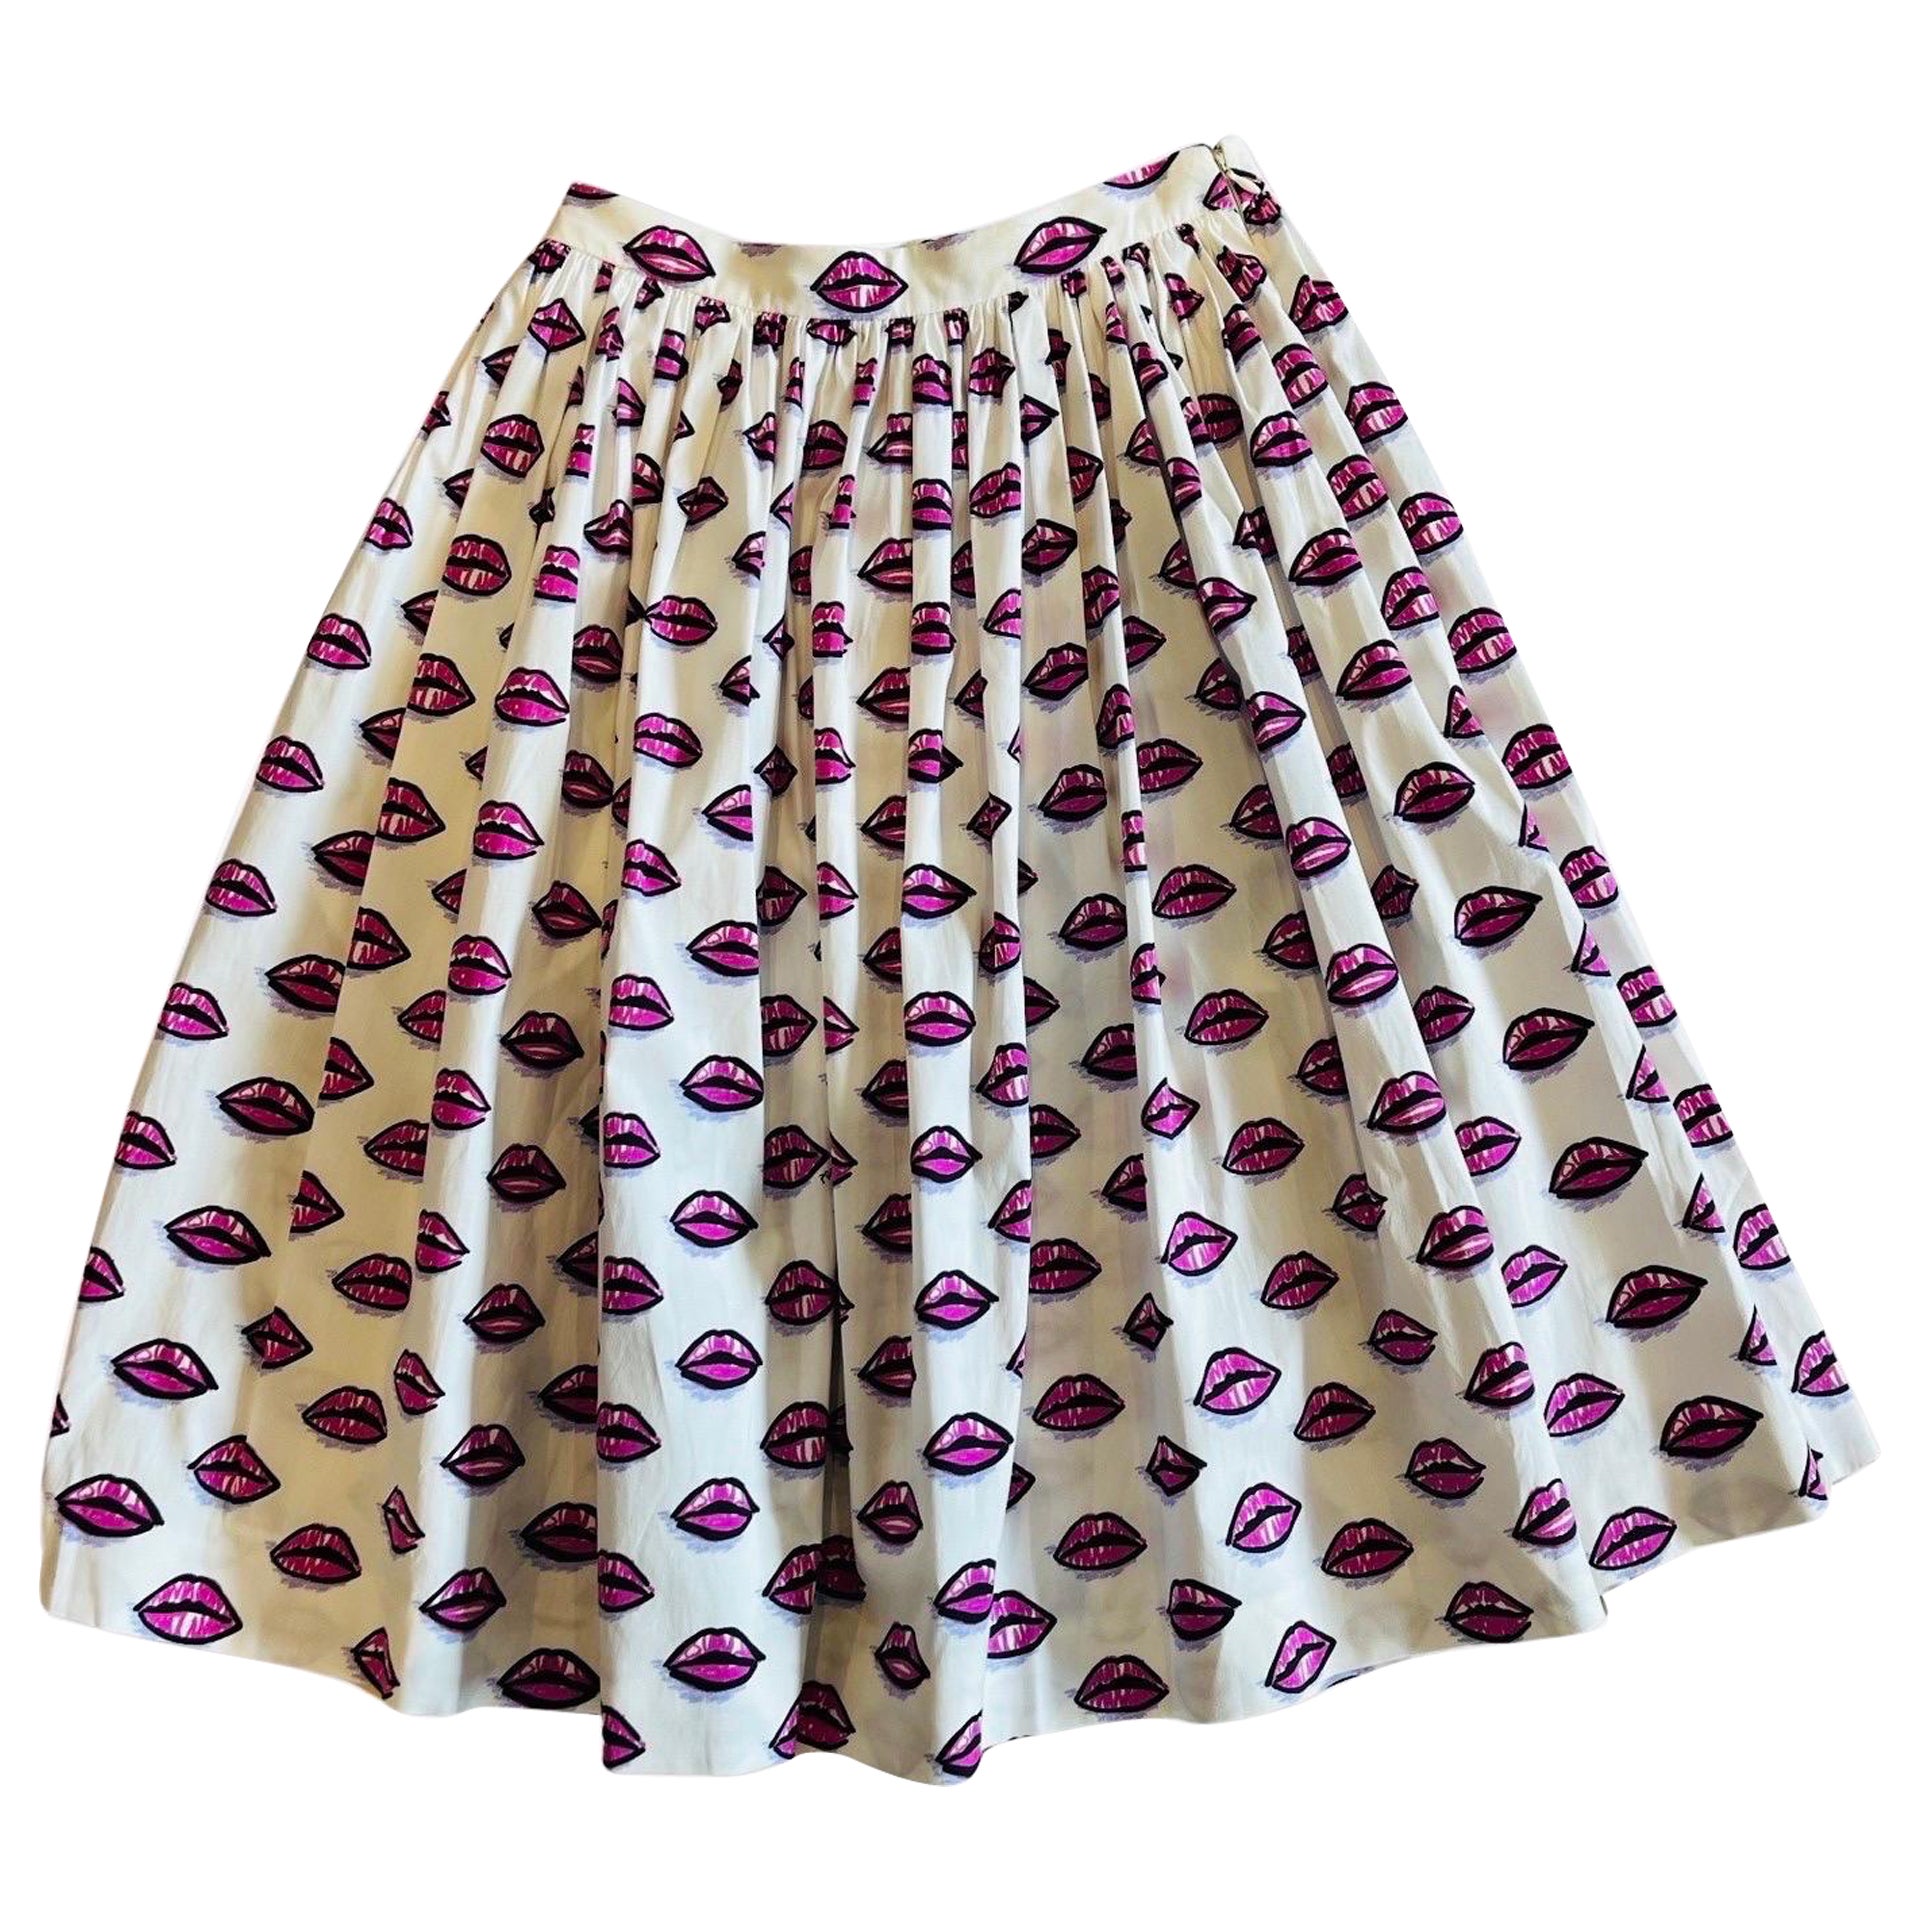 2017 Prada Iconic Lip Print Full Skirt For Sale